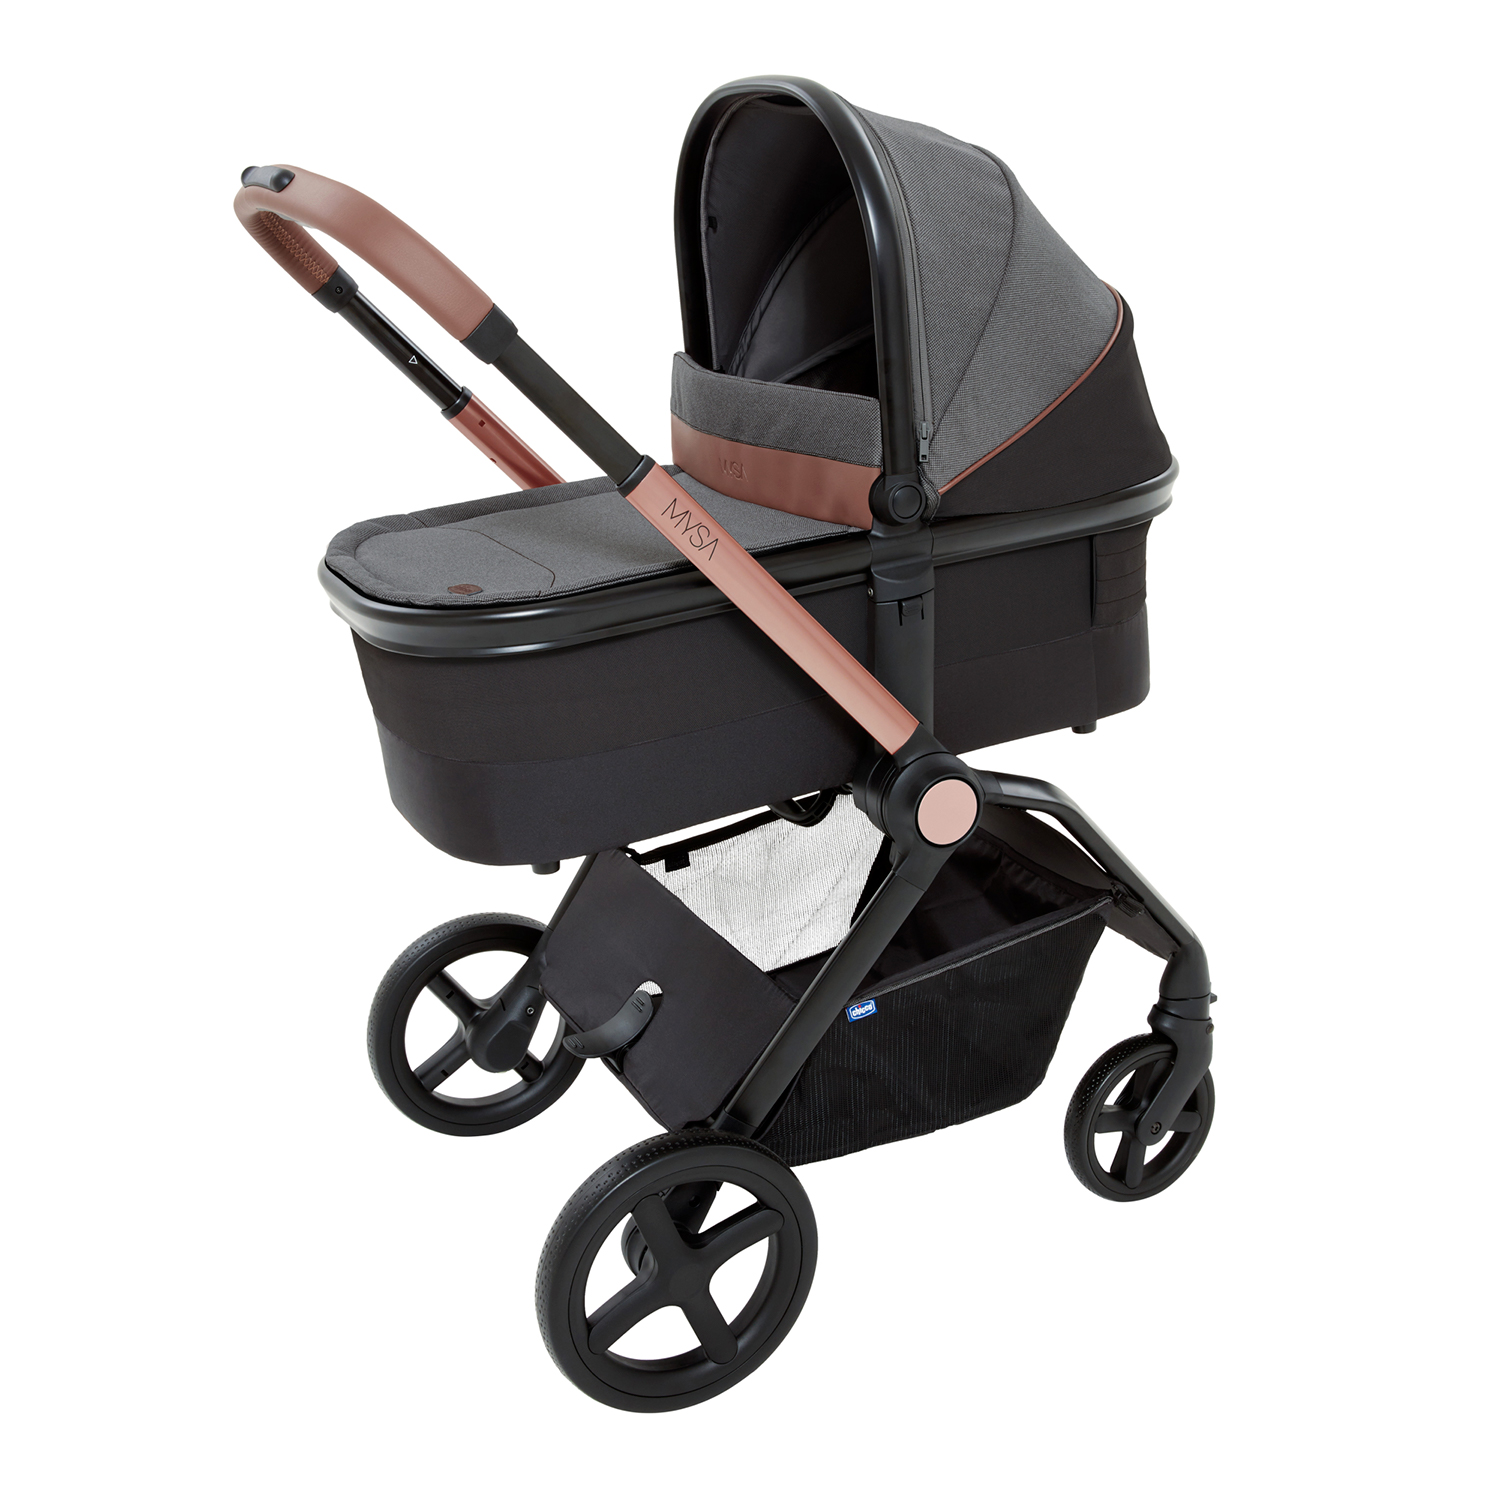 Люлька для детской коляски Chicco MYSA BLACK SATIN люлька valco baby external bassinet для snap duo coal black